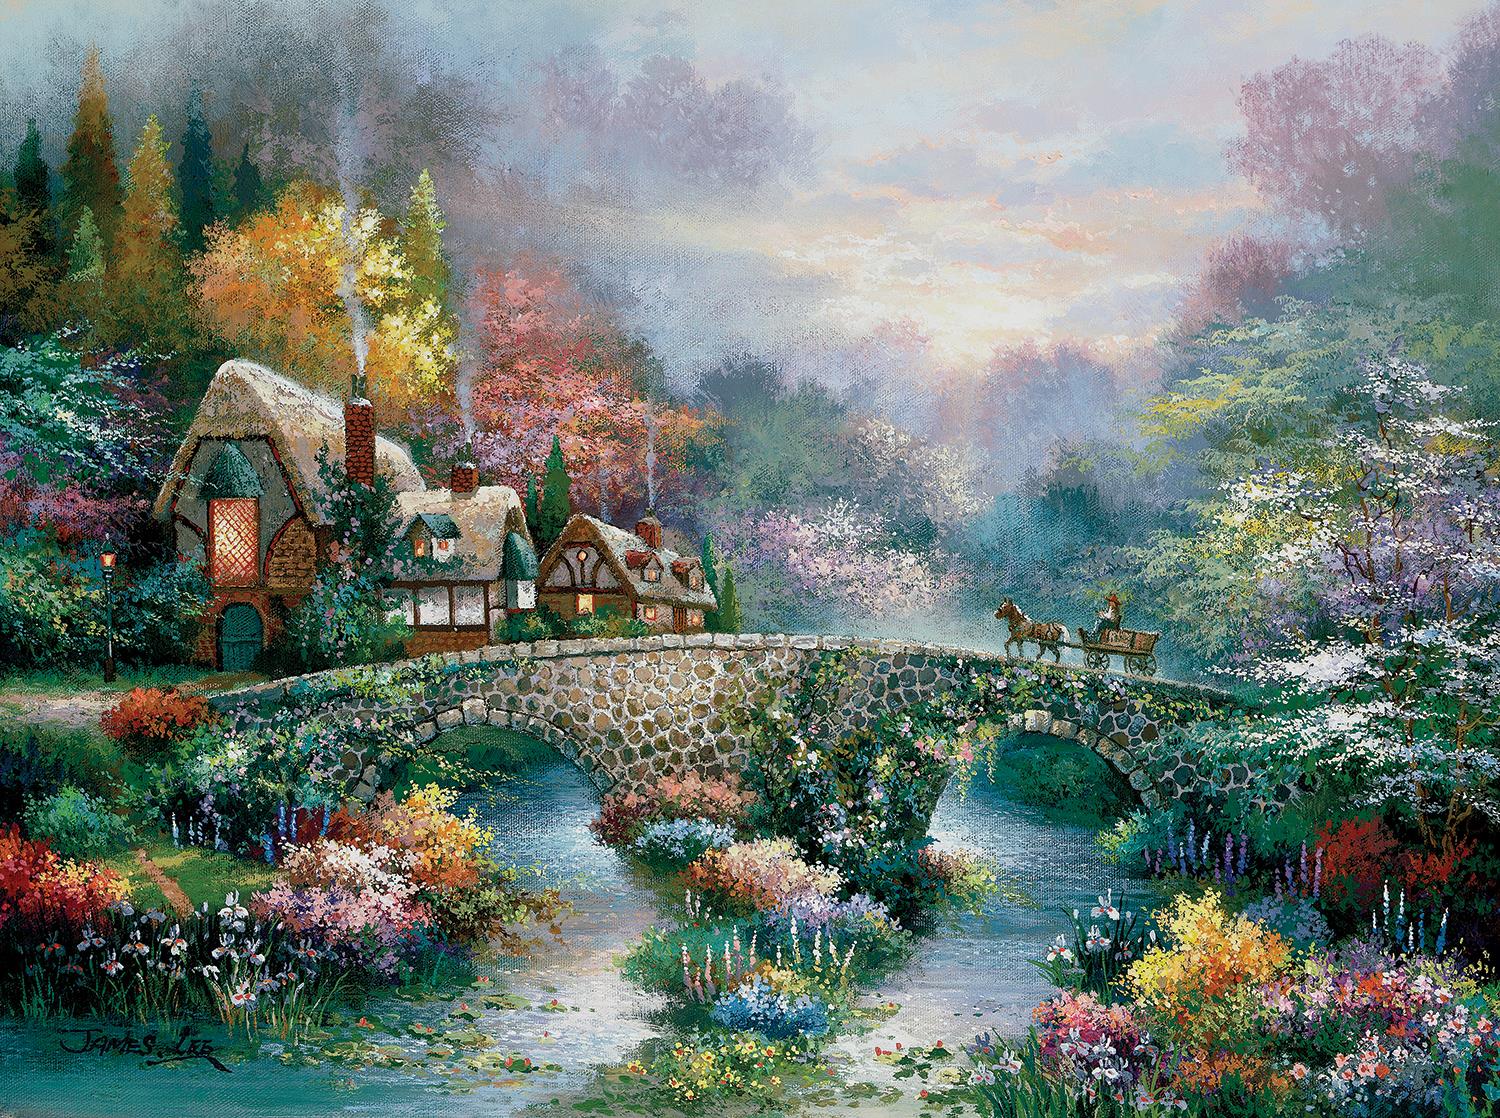 Sunsout Peaceful Cottage, James Lee Jigsaw Puzzle (1000 Pieces)